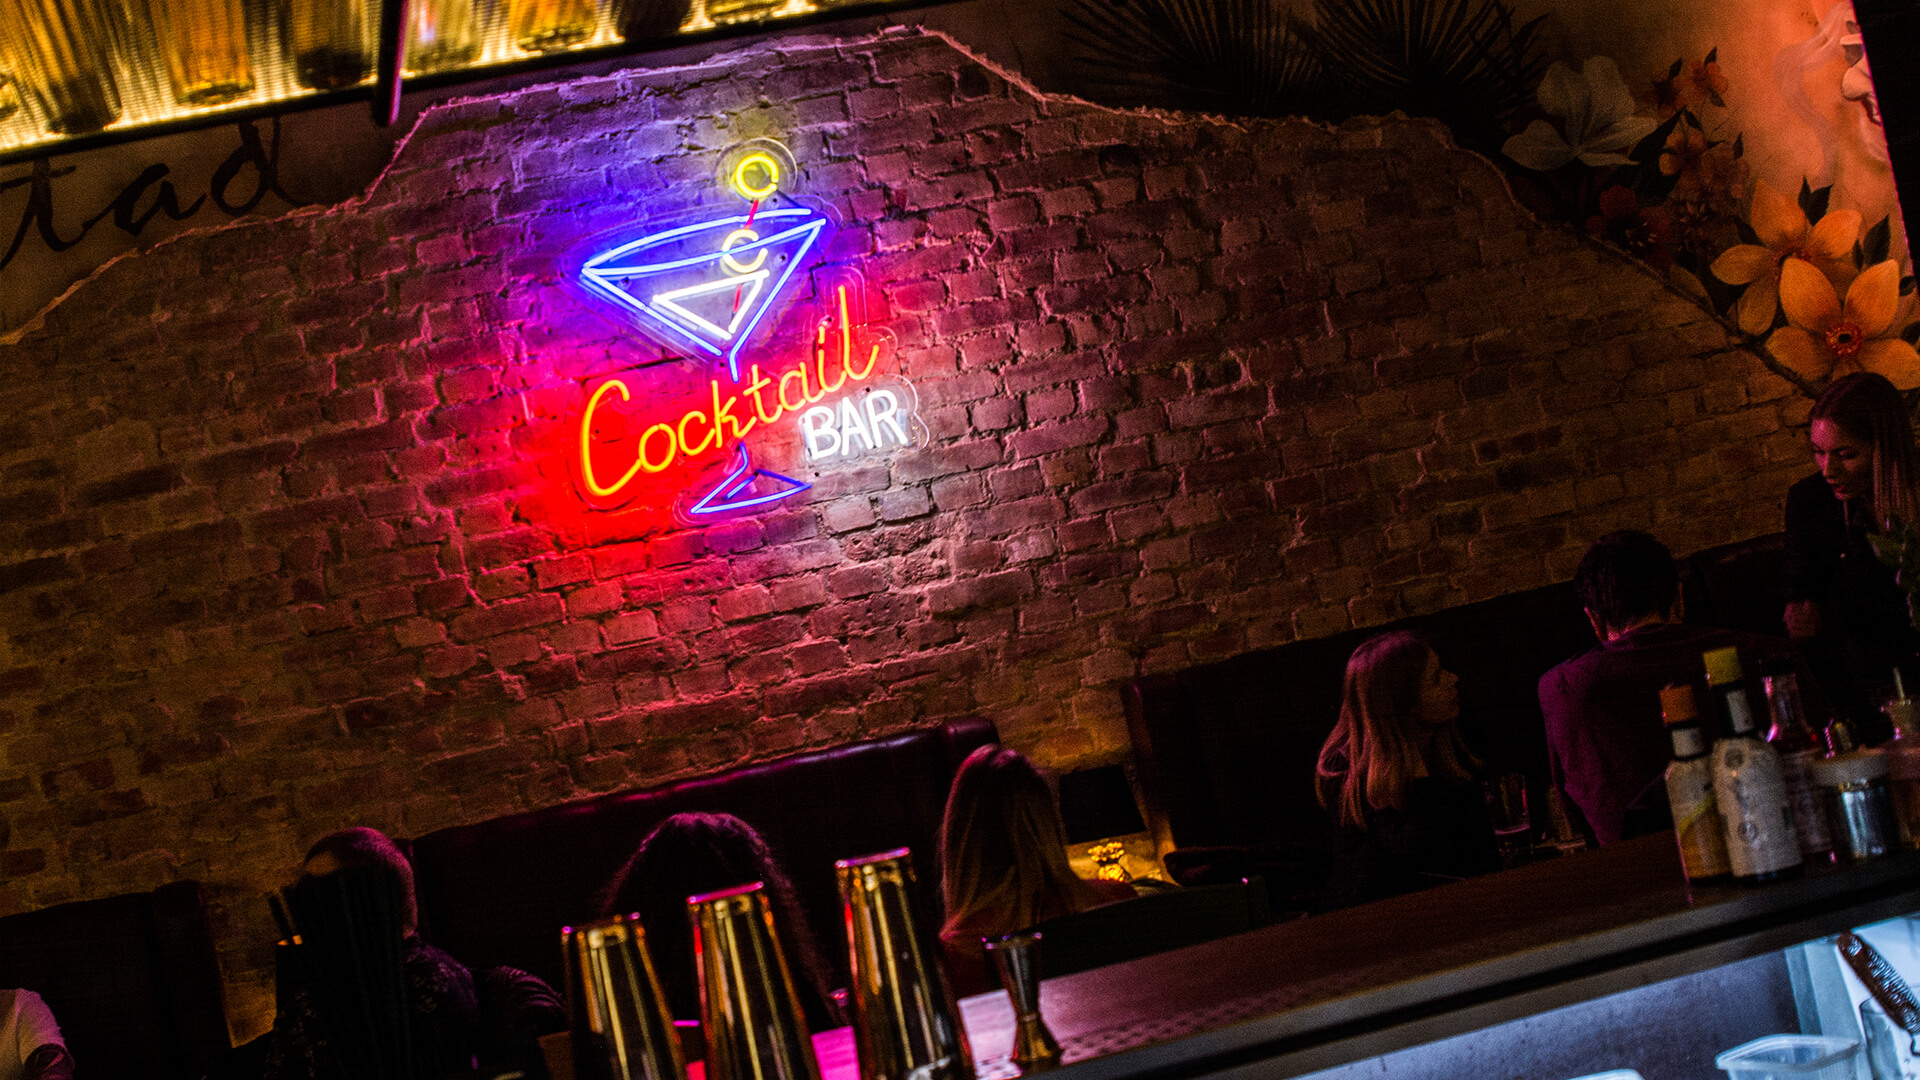 cuba libre Cuba vetro cocktailbar cocktail bar - cuba-libre-neon-vetro-su-muro-con-mattone-in-ristorante-coctail-bar-neon-colore-su-muro-sopra-tavoli-neon-ordine-illuminato-vetro-poznan